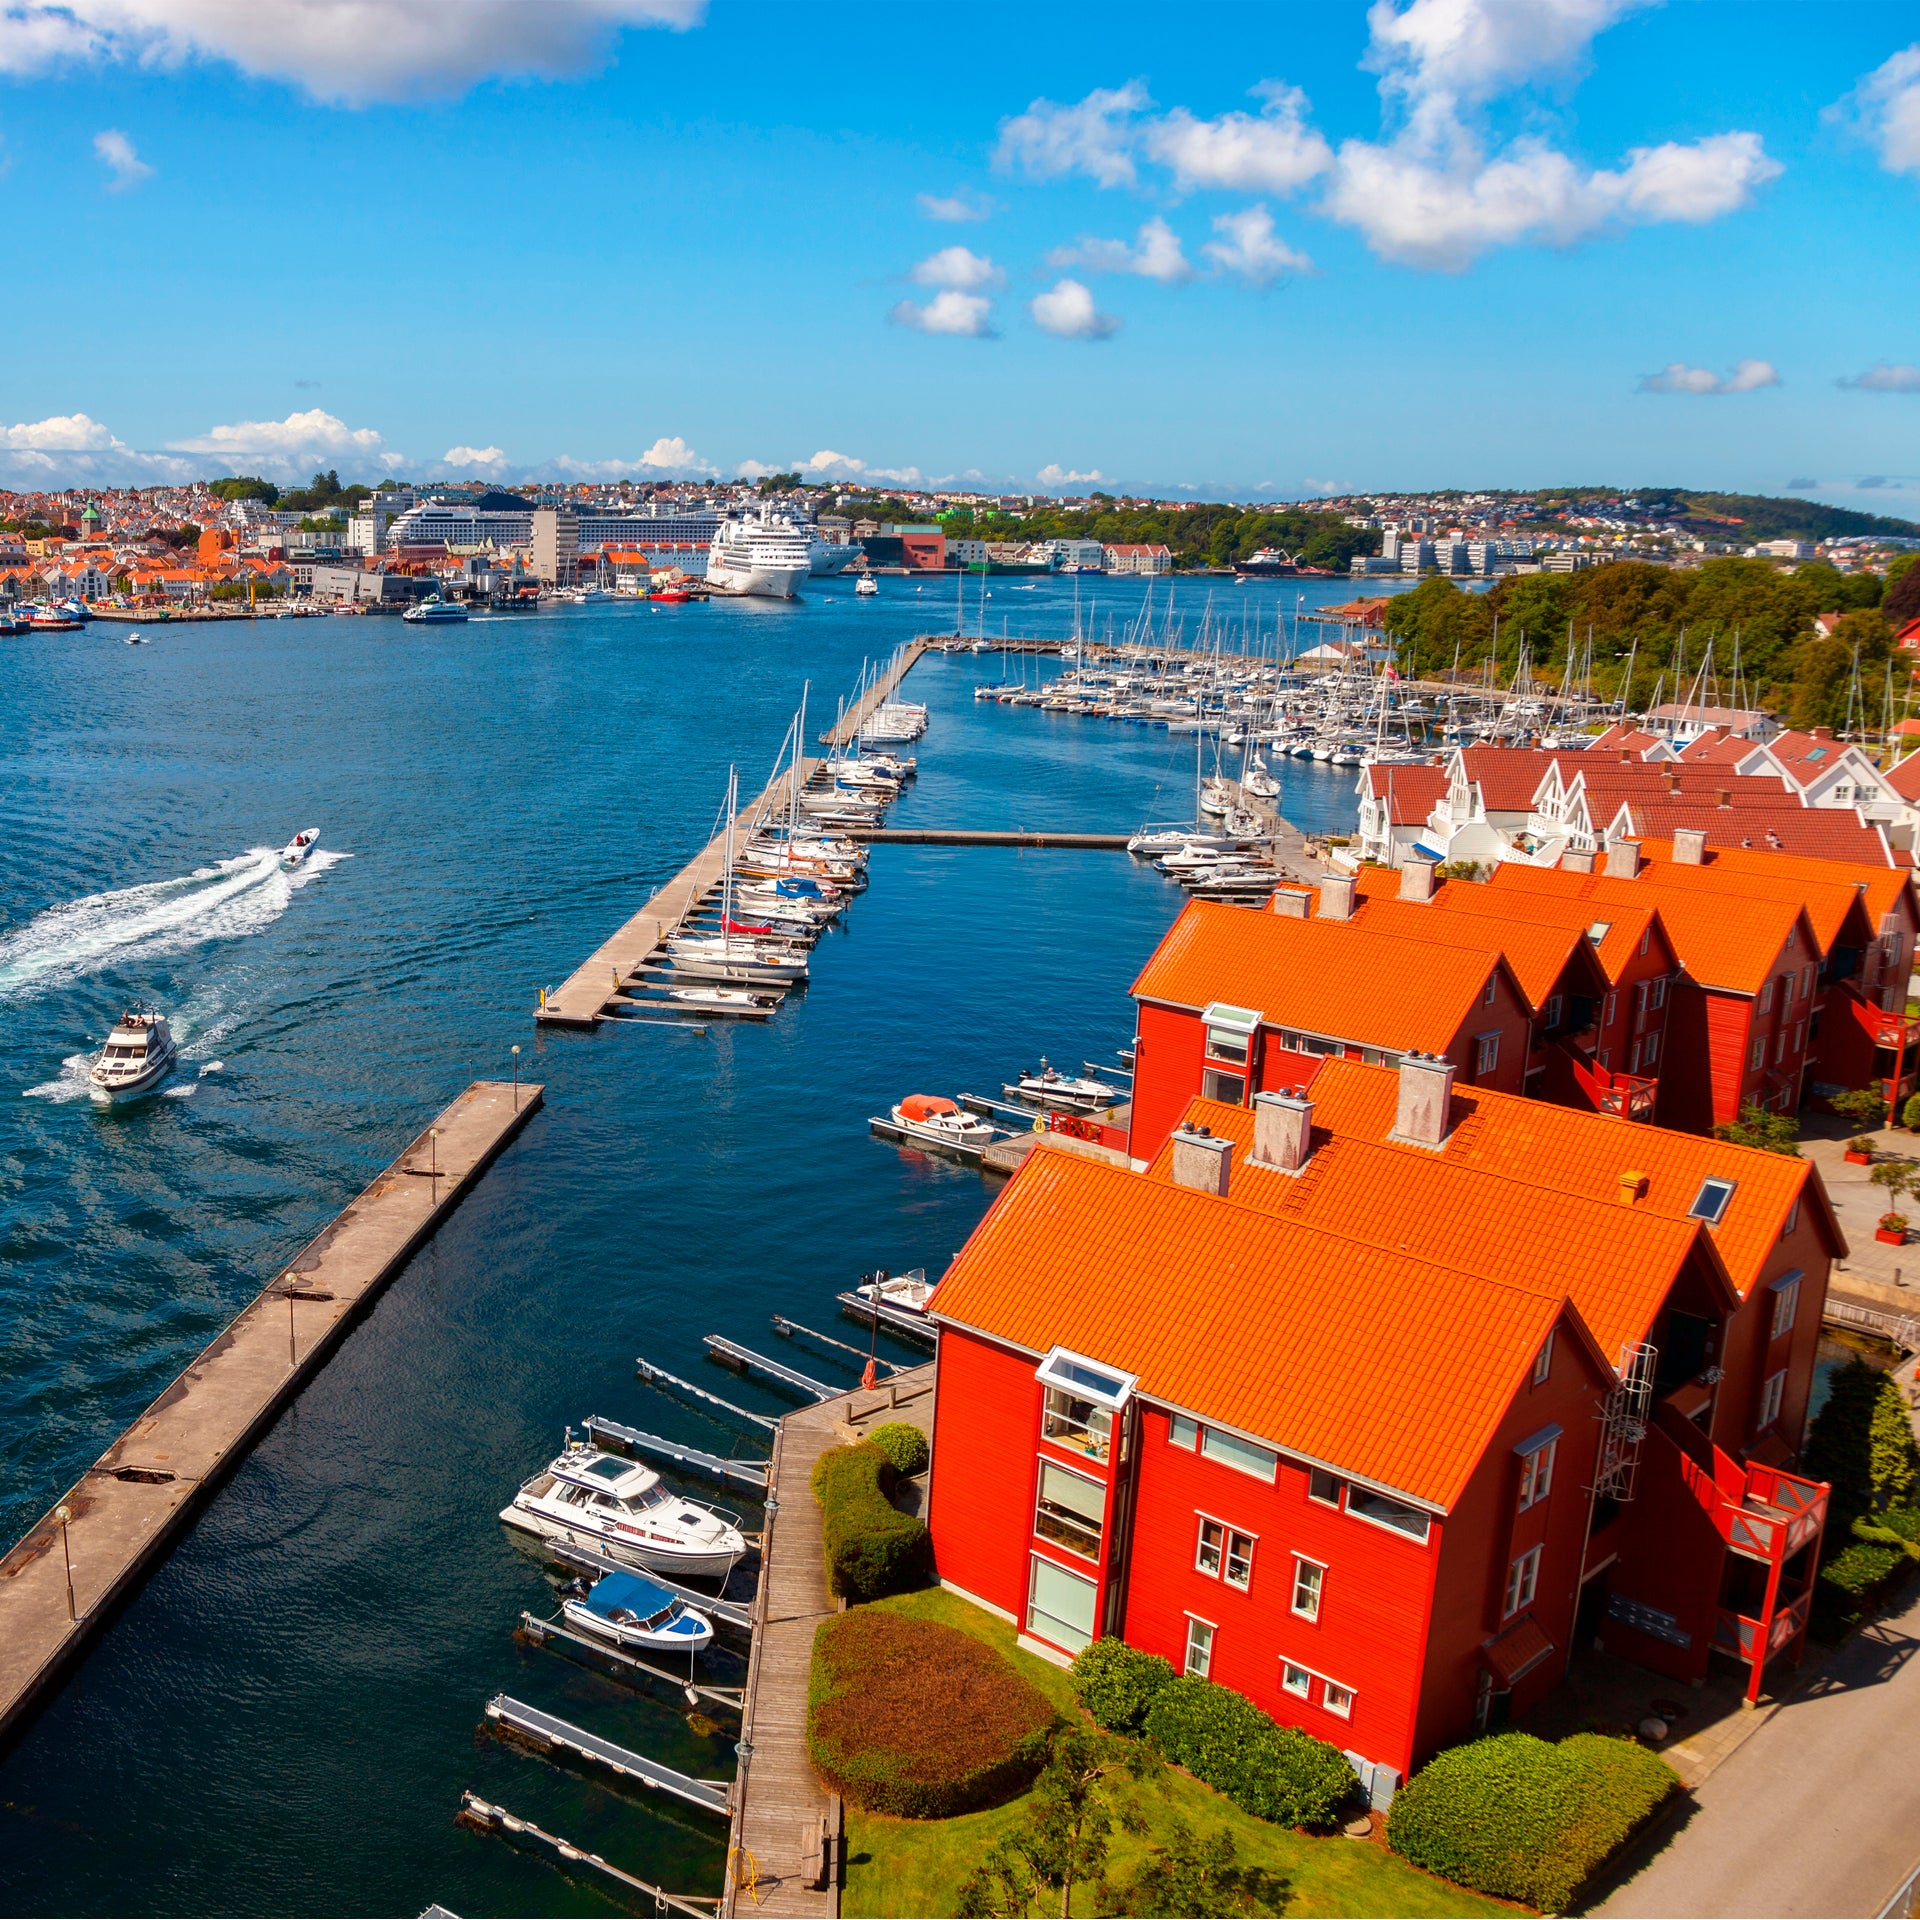 Barche a vela in un colorato porto della Norvegia